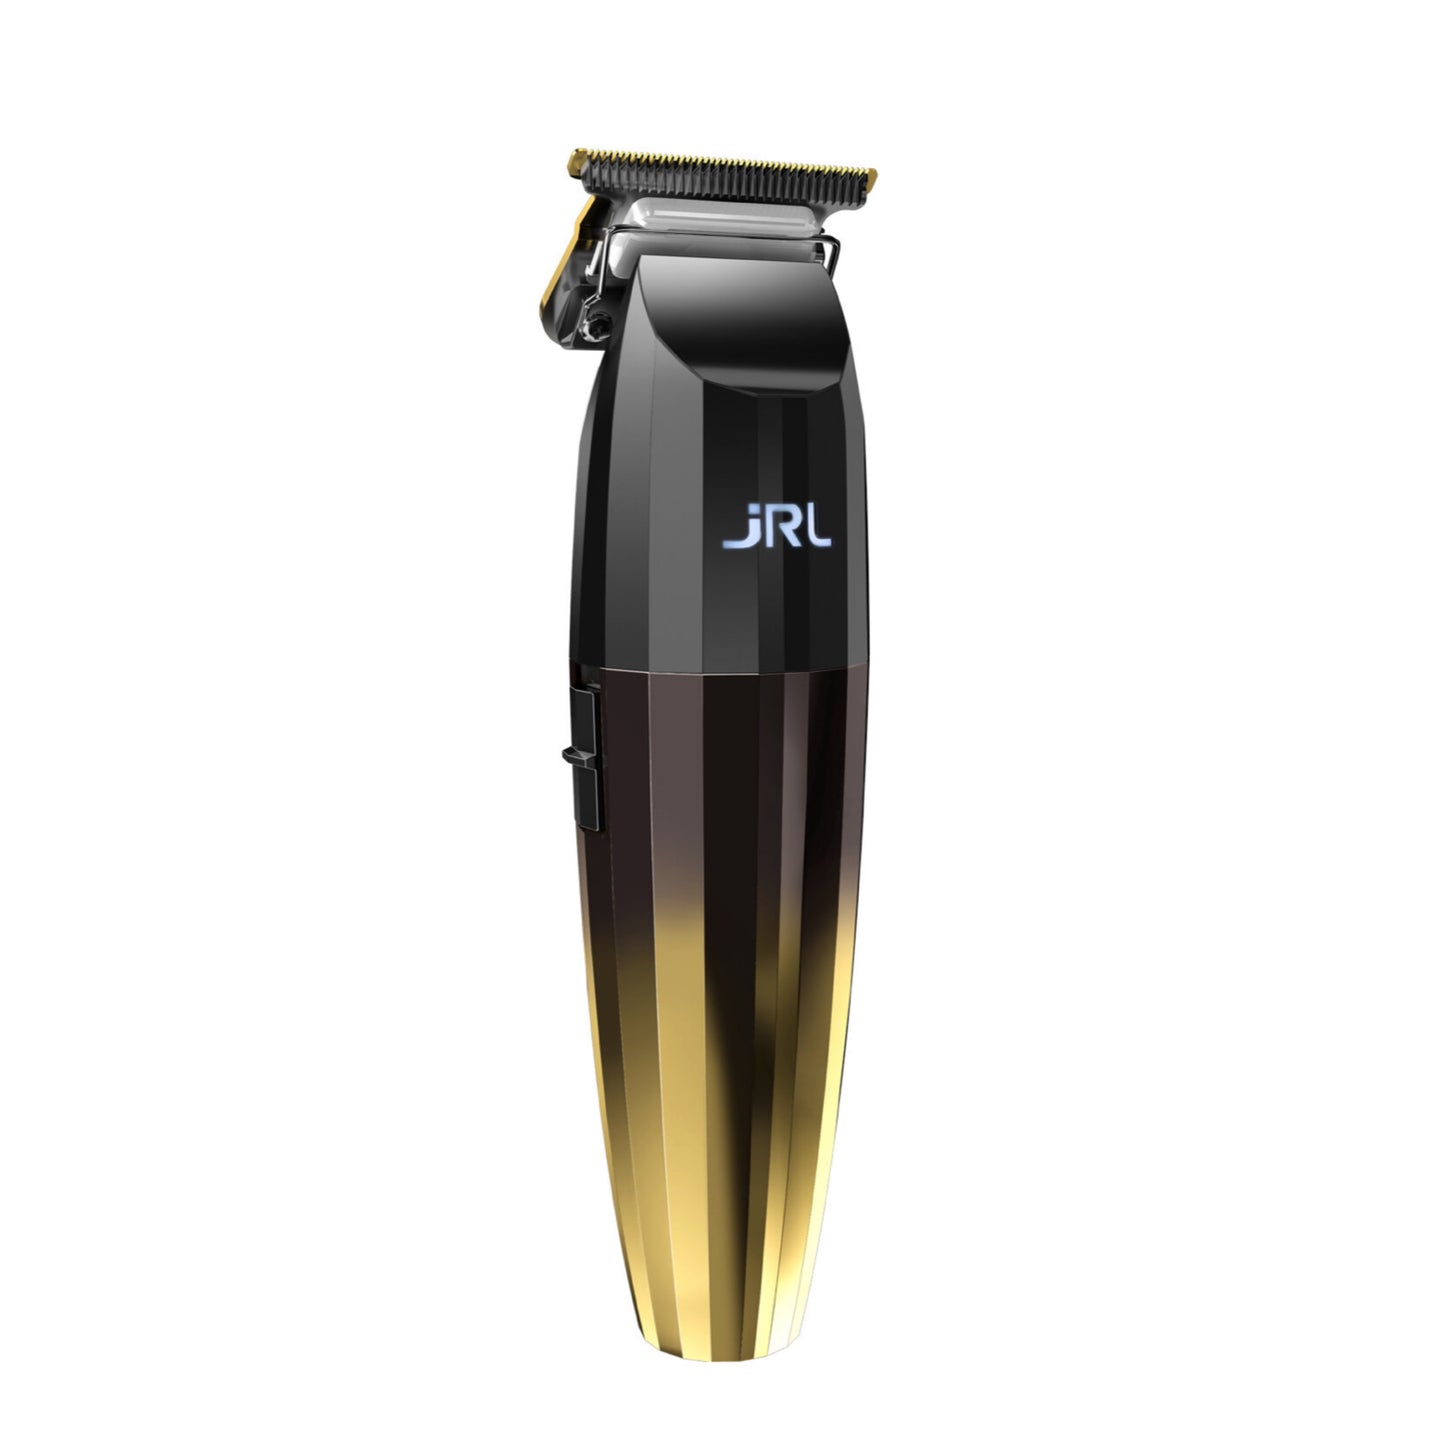 JRL Professional FreshFade 2020T Gold Trimmer